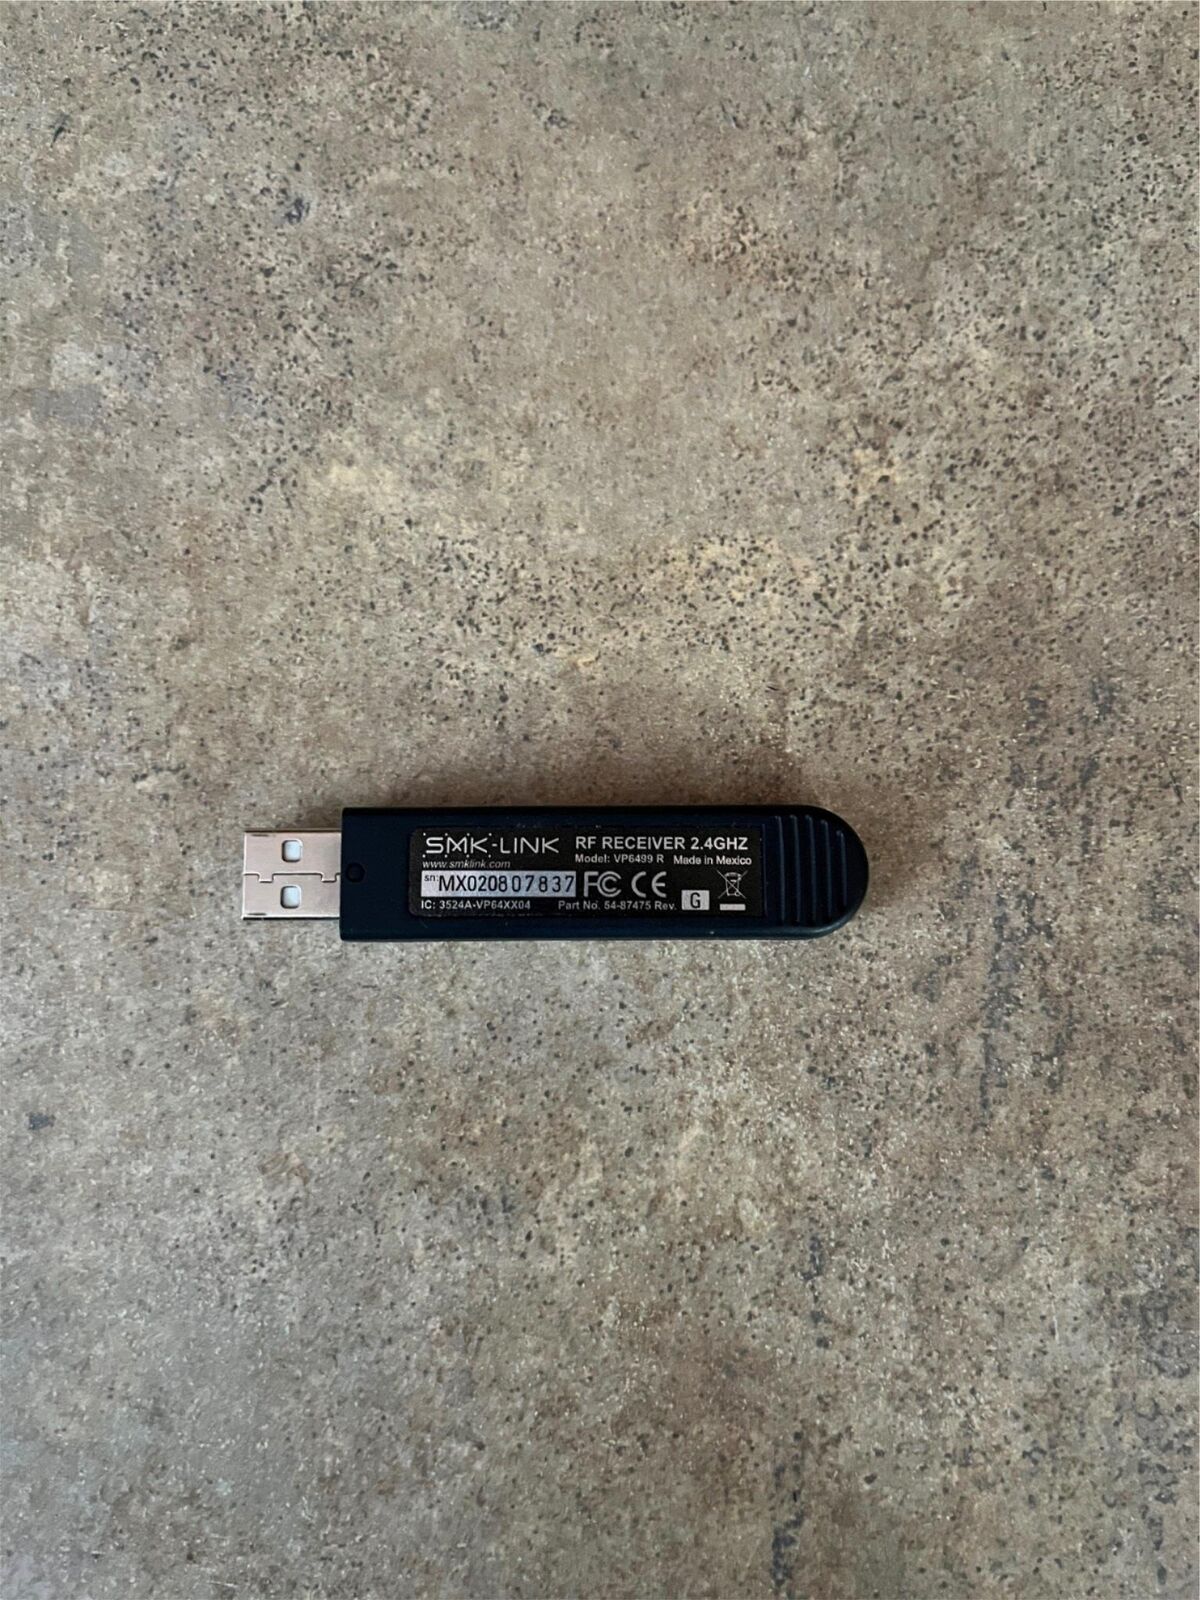 SMK-LINK USB - RF RECEIVER 2.4GHZ VP6499  I3-4(13)